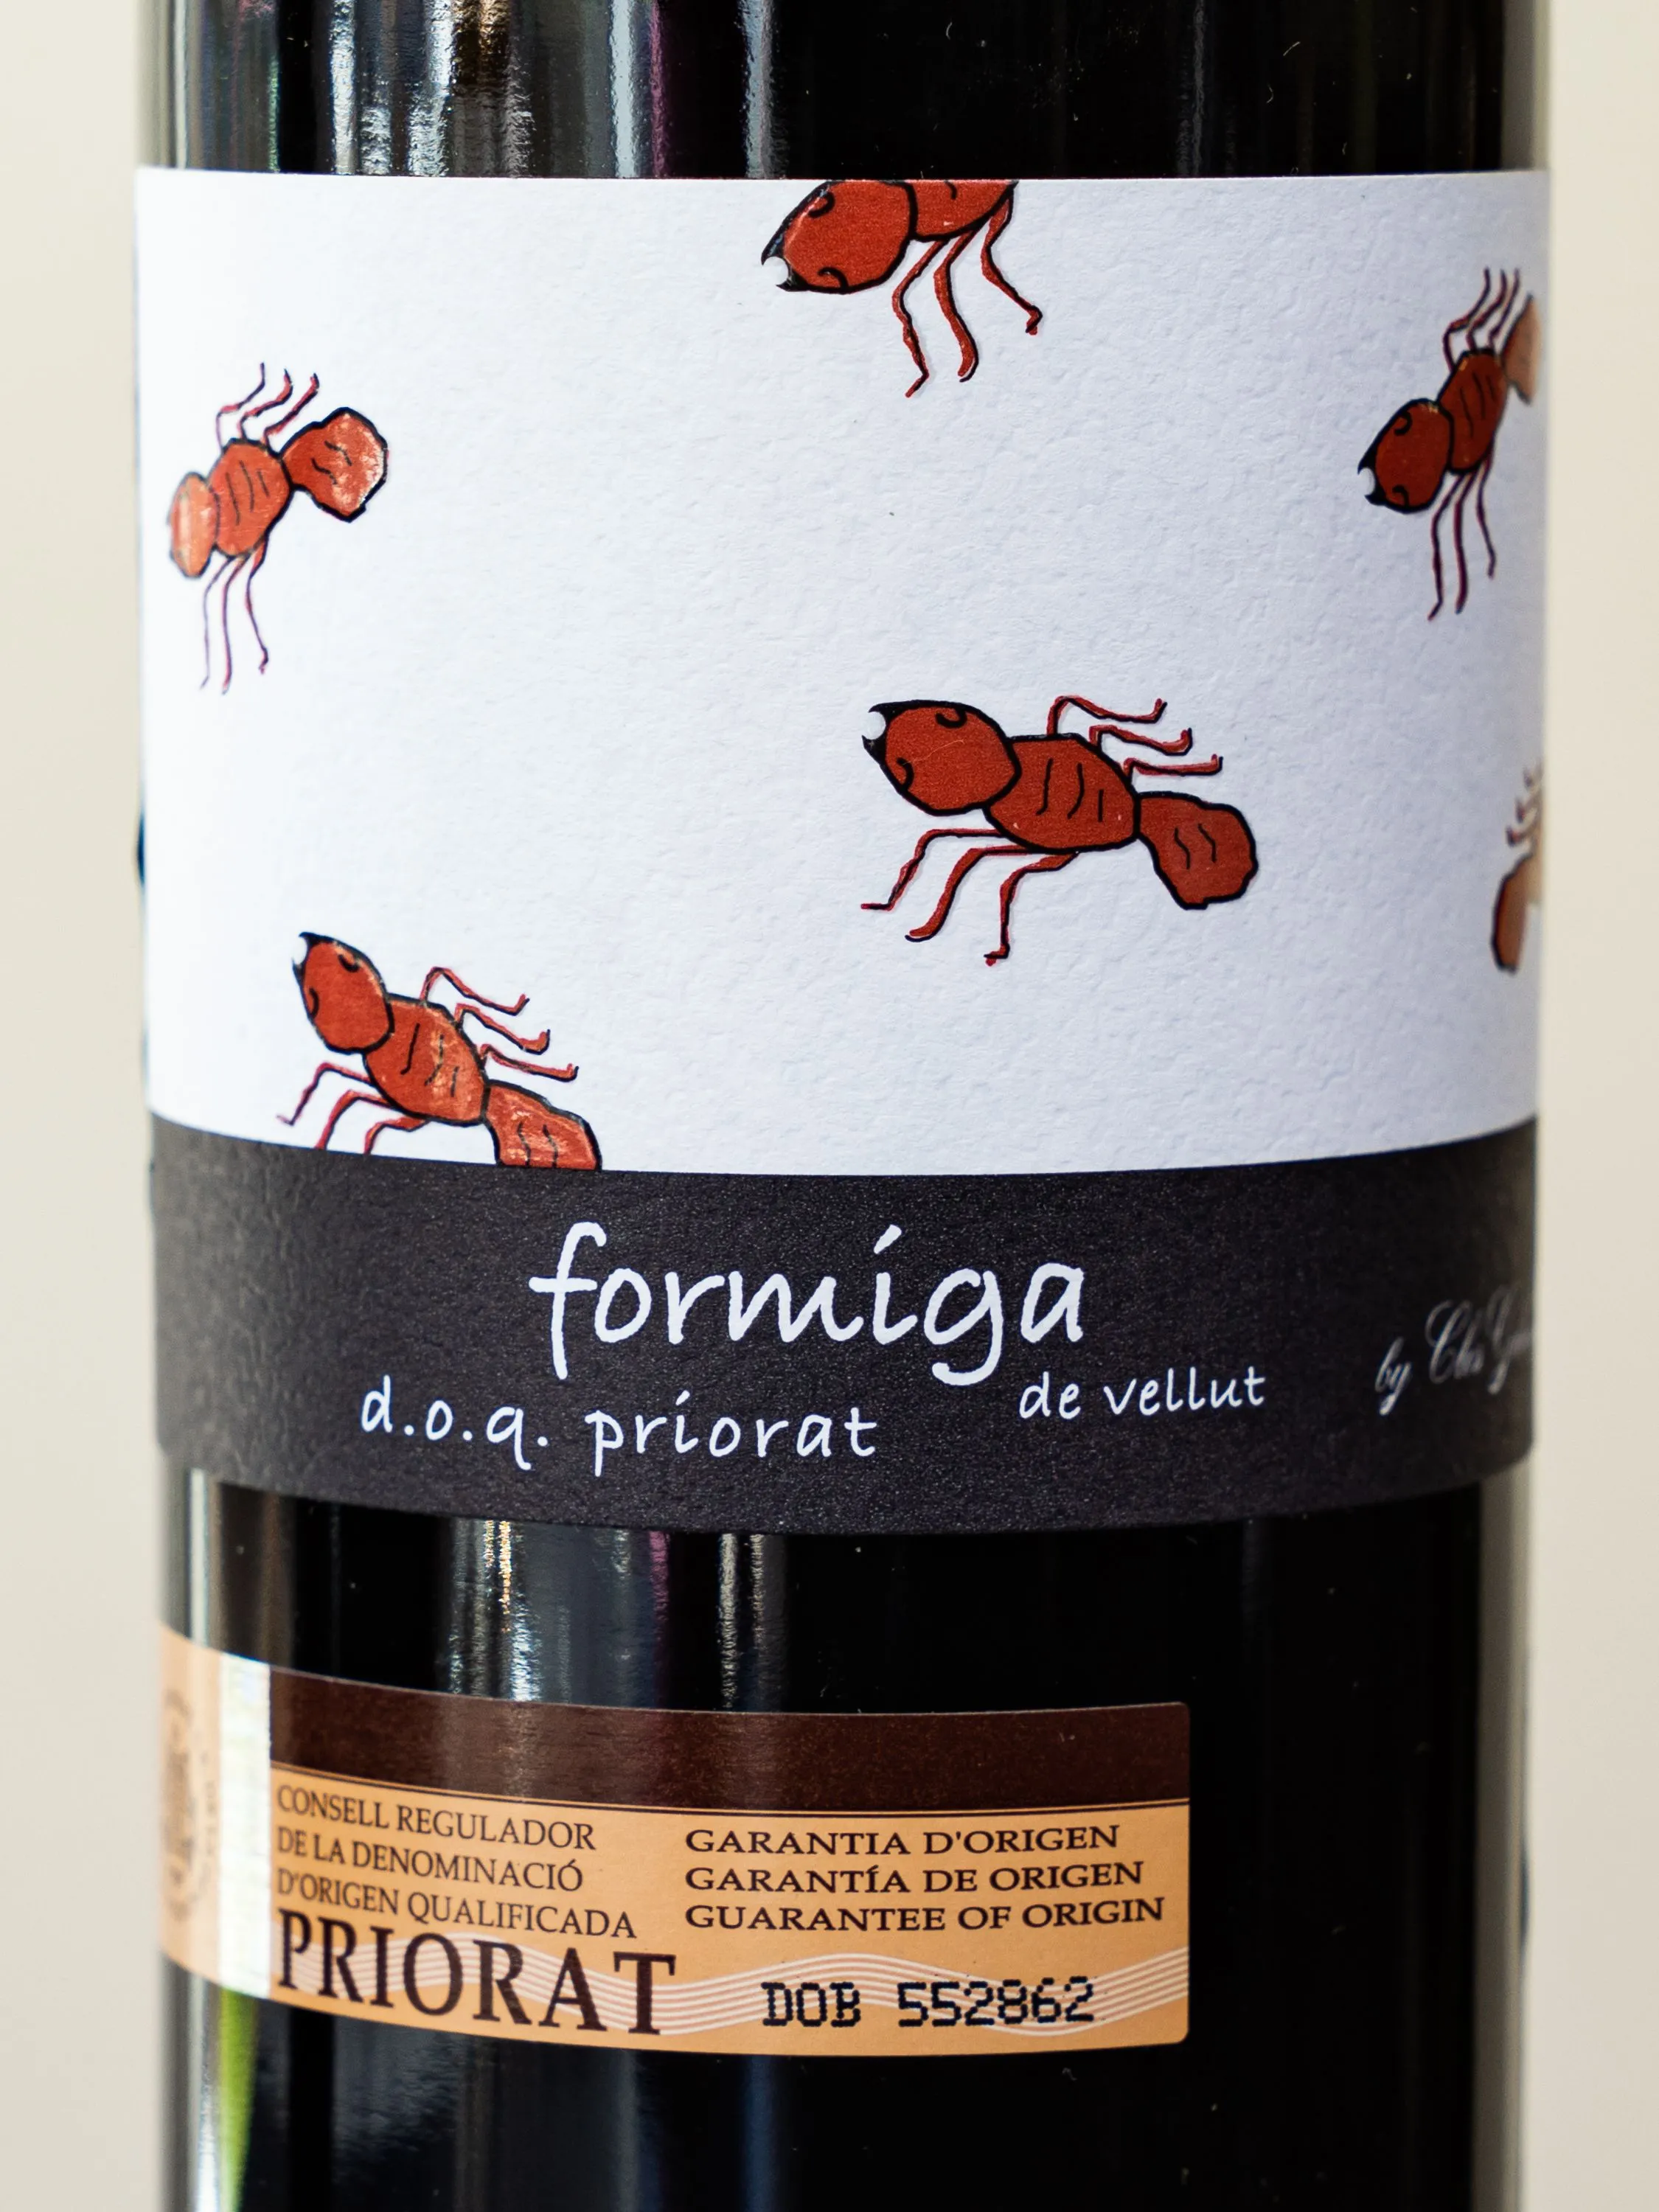 Вино Domini de la Cartoixa Formiga de Vellut Priorat / Домини де ла Картоикша Формига де Веллют Приорат